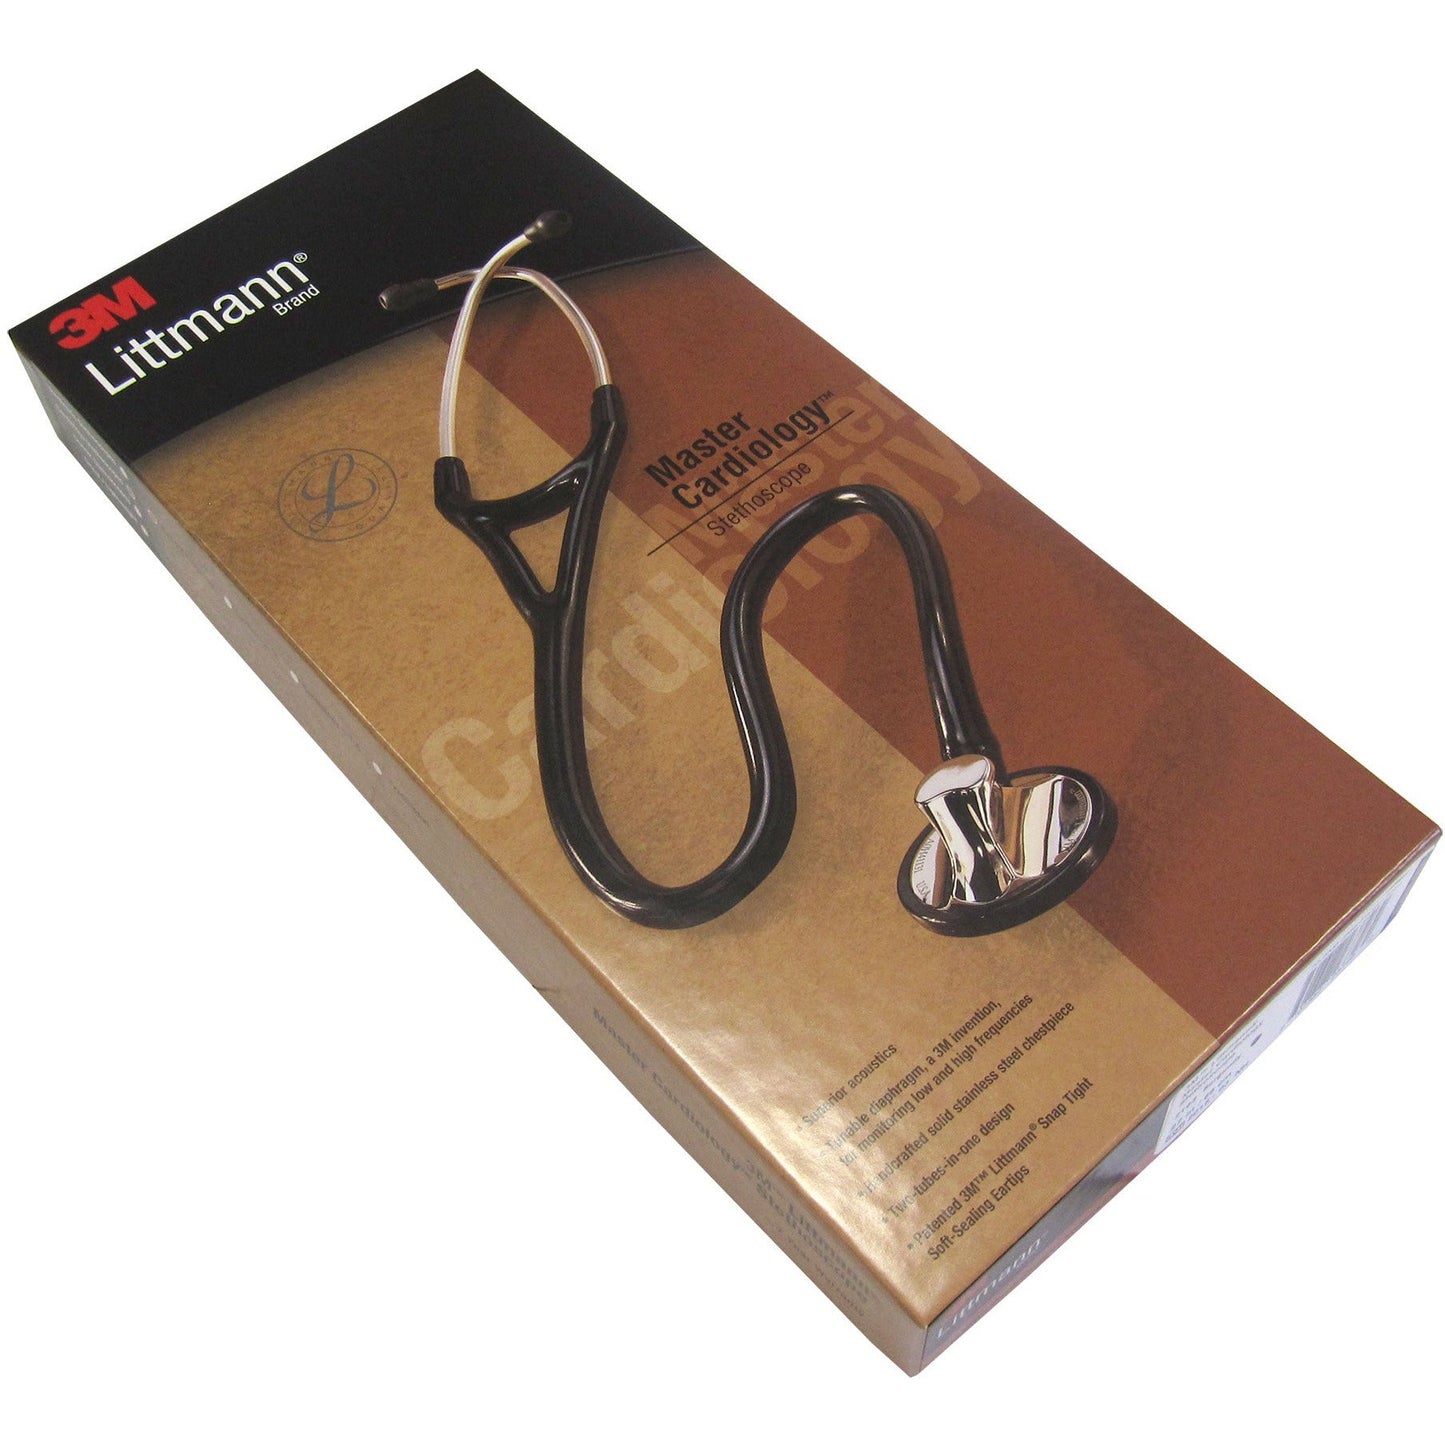 Stetoskopju Littmann Master Cardiology: Burgundy 2163